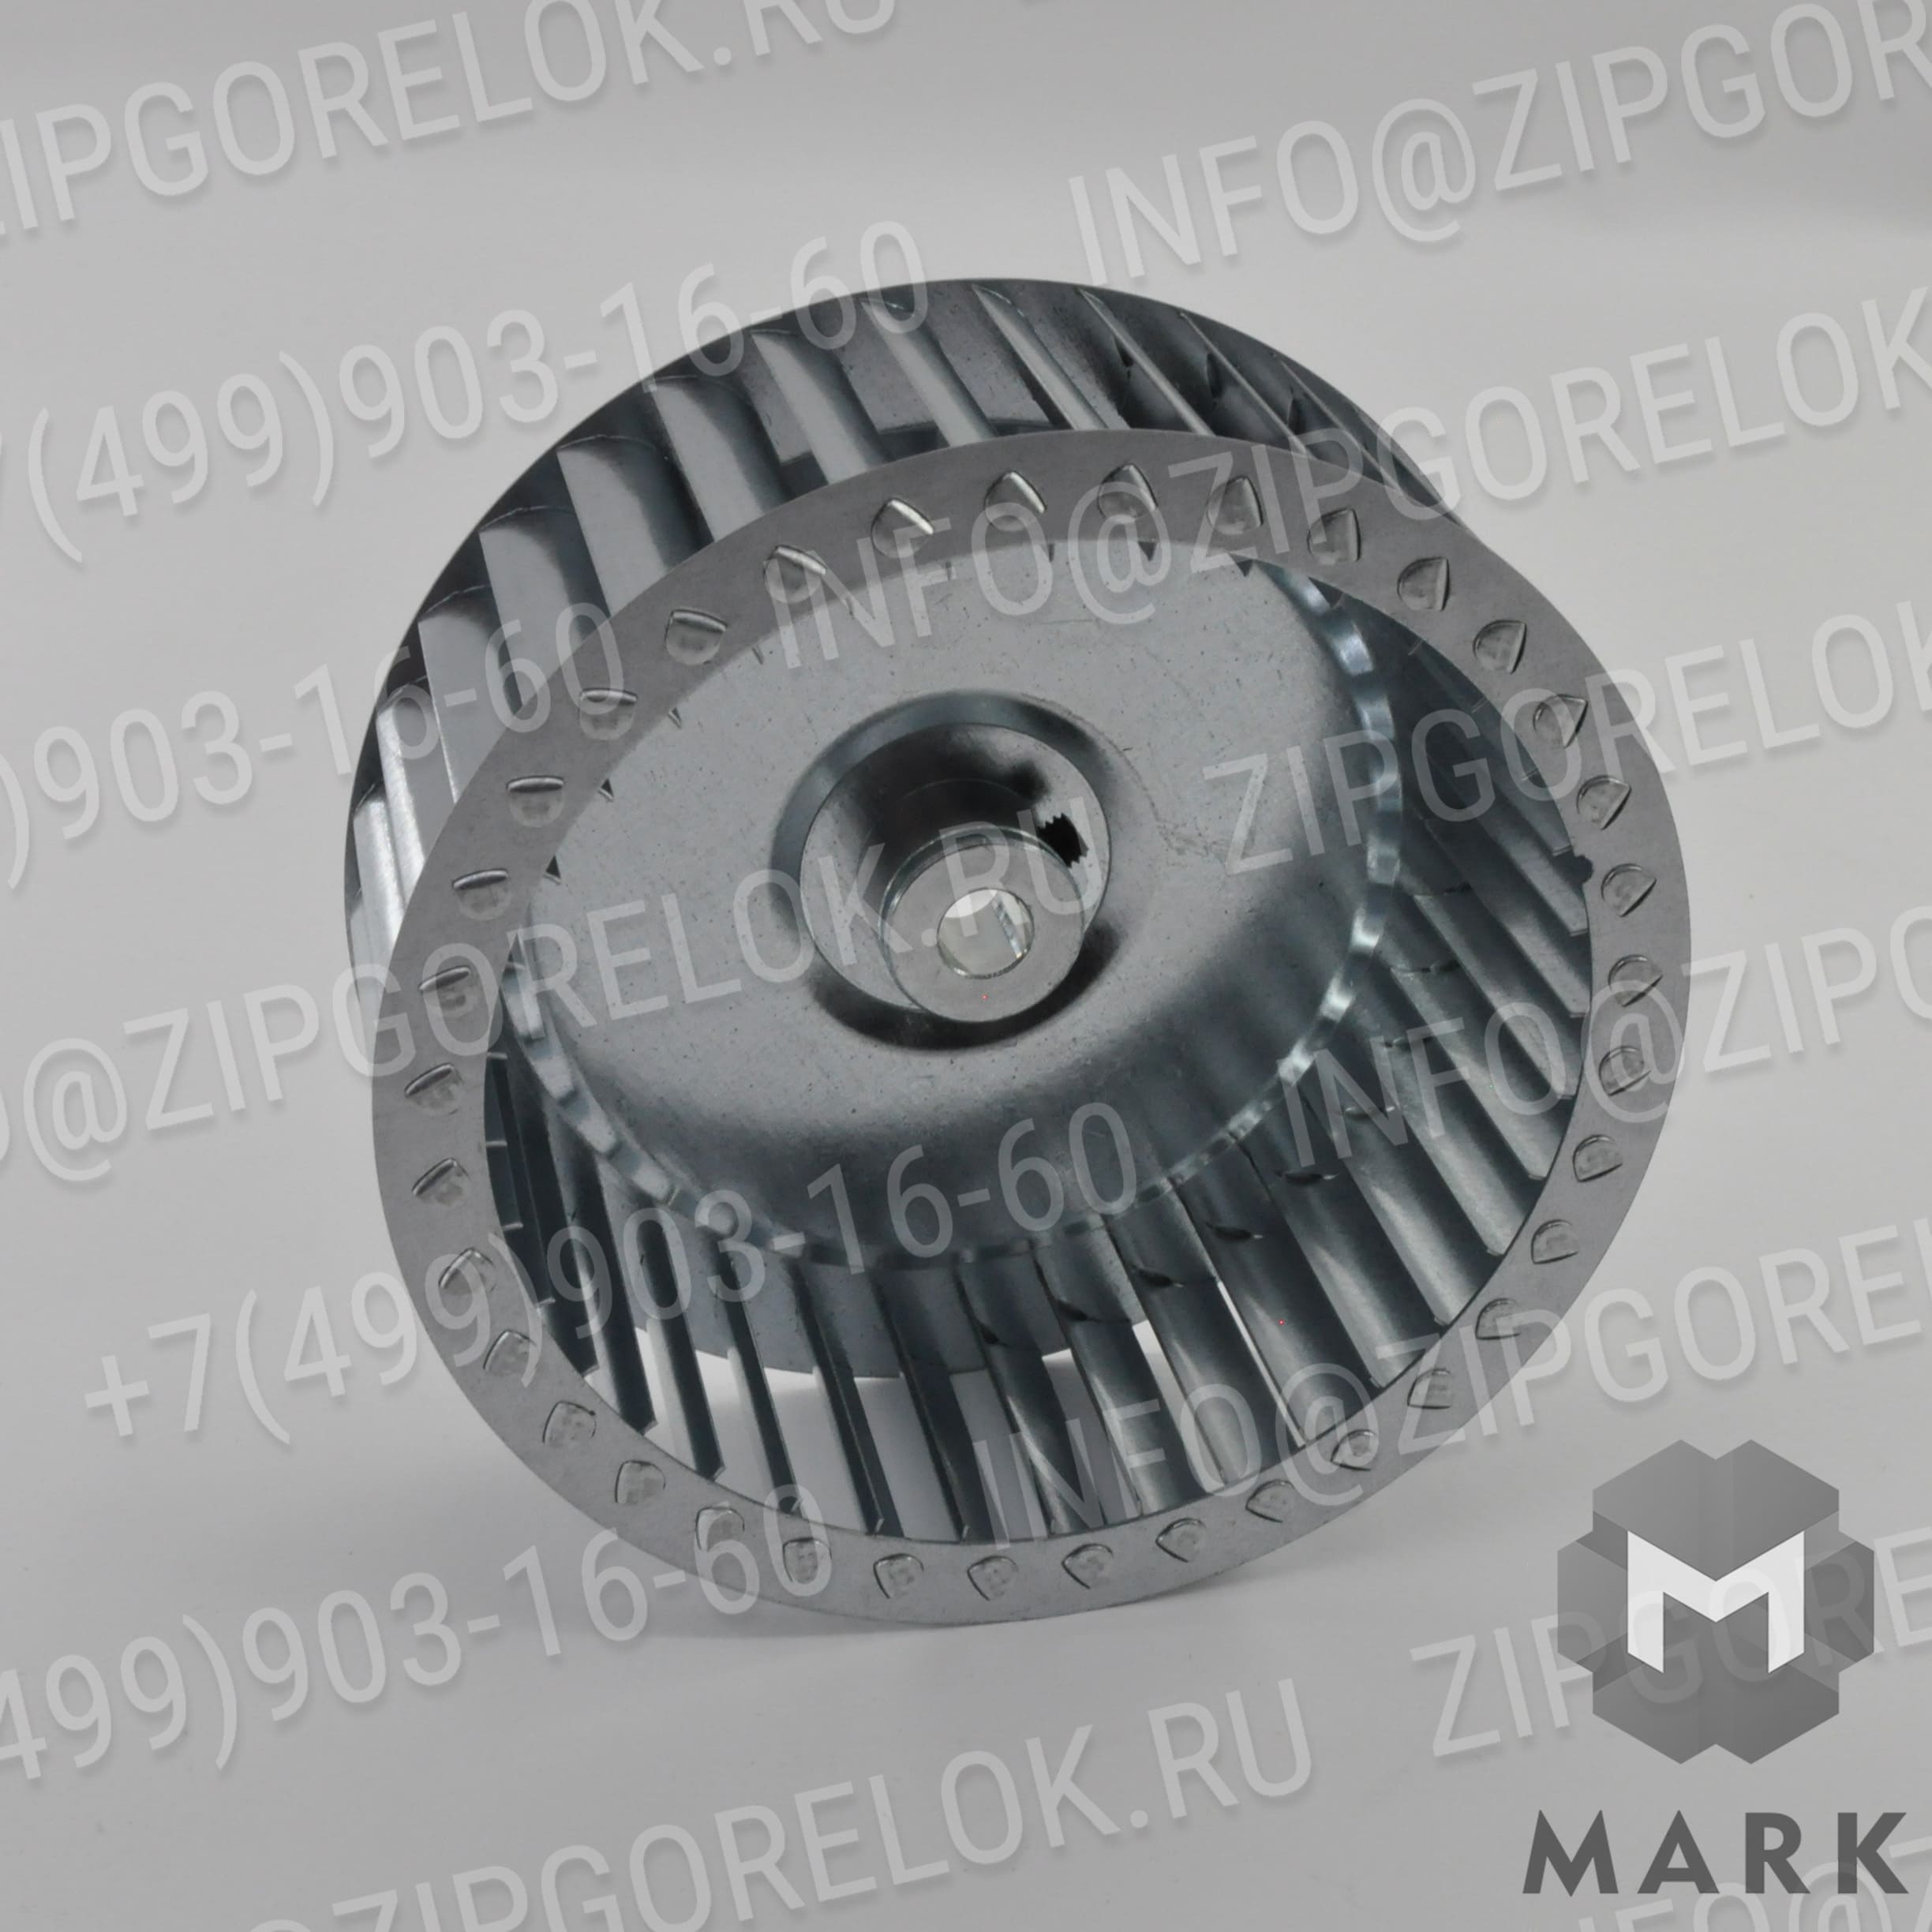 0013010004 Купить Вентилятор (крыльчатка/лопастное колесо) Ø133 X 47 | Zipgorelok.ru